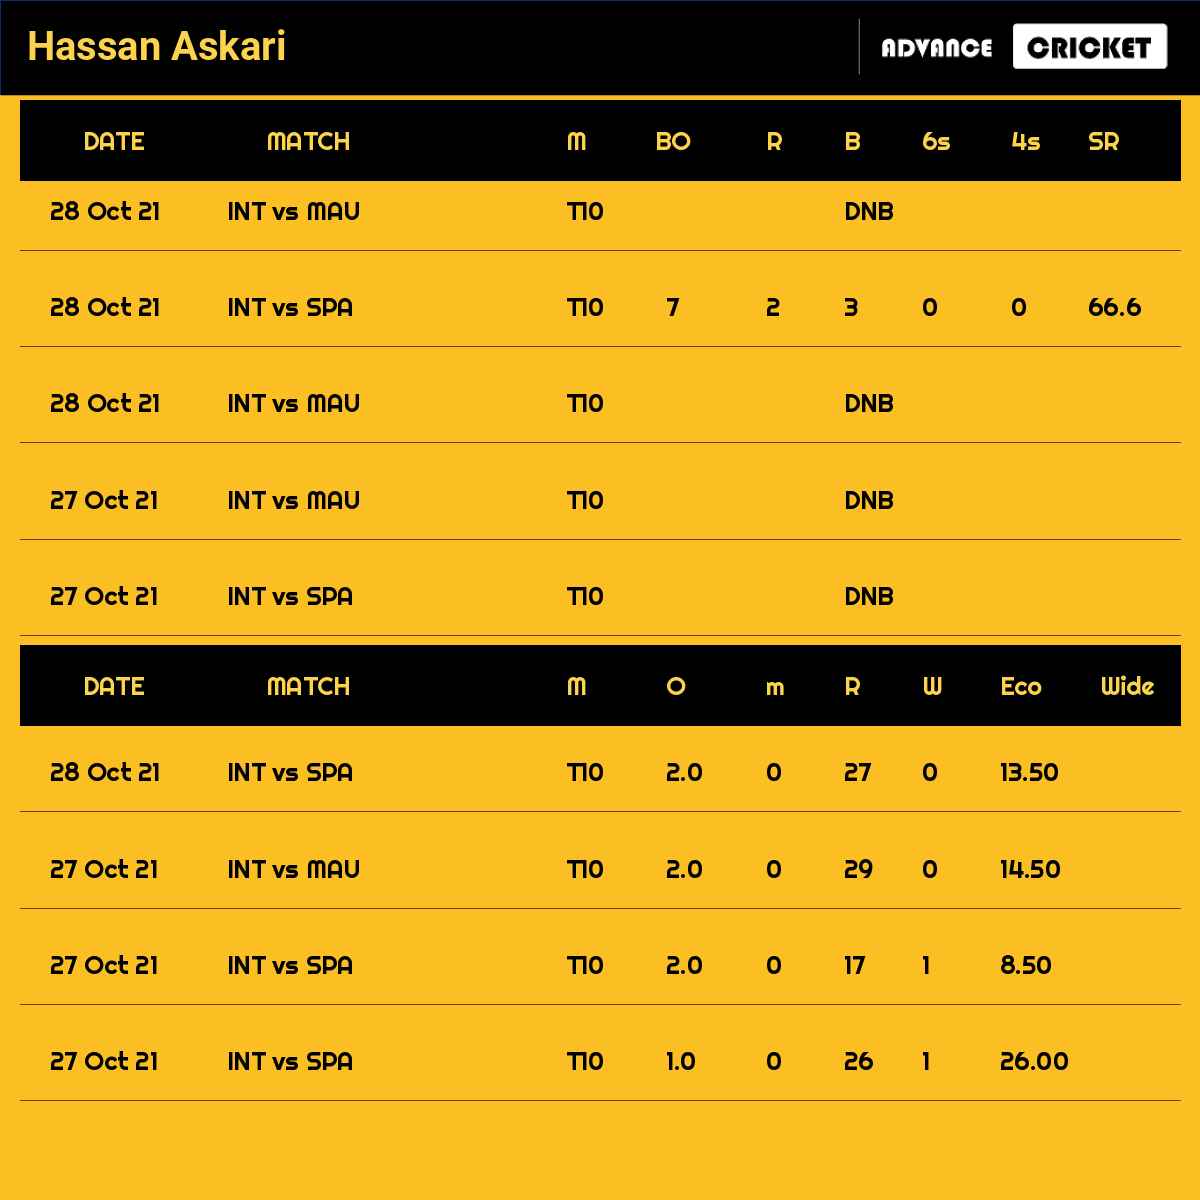 Hassan Askari recent matches